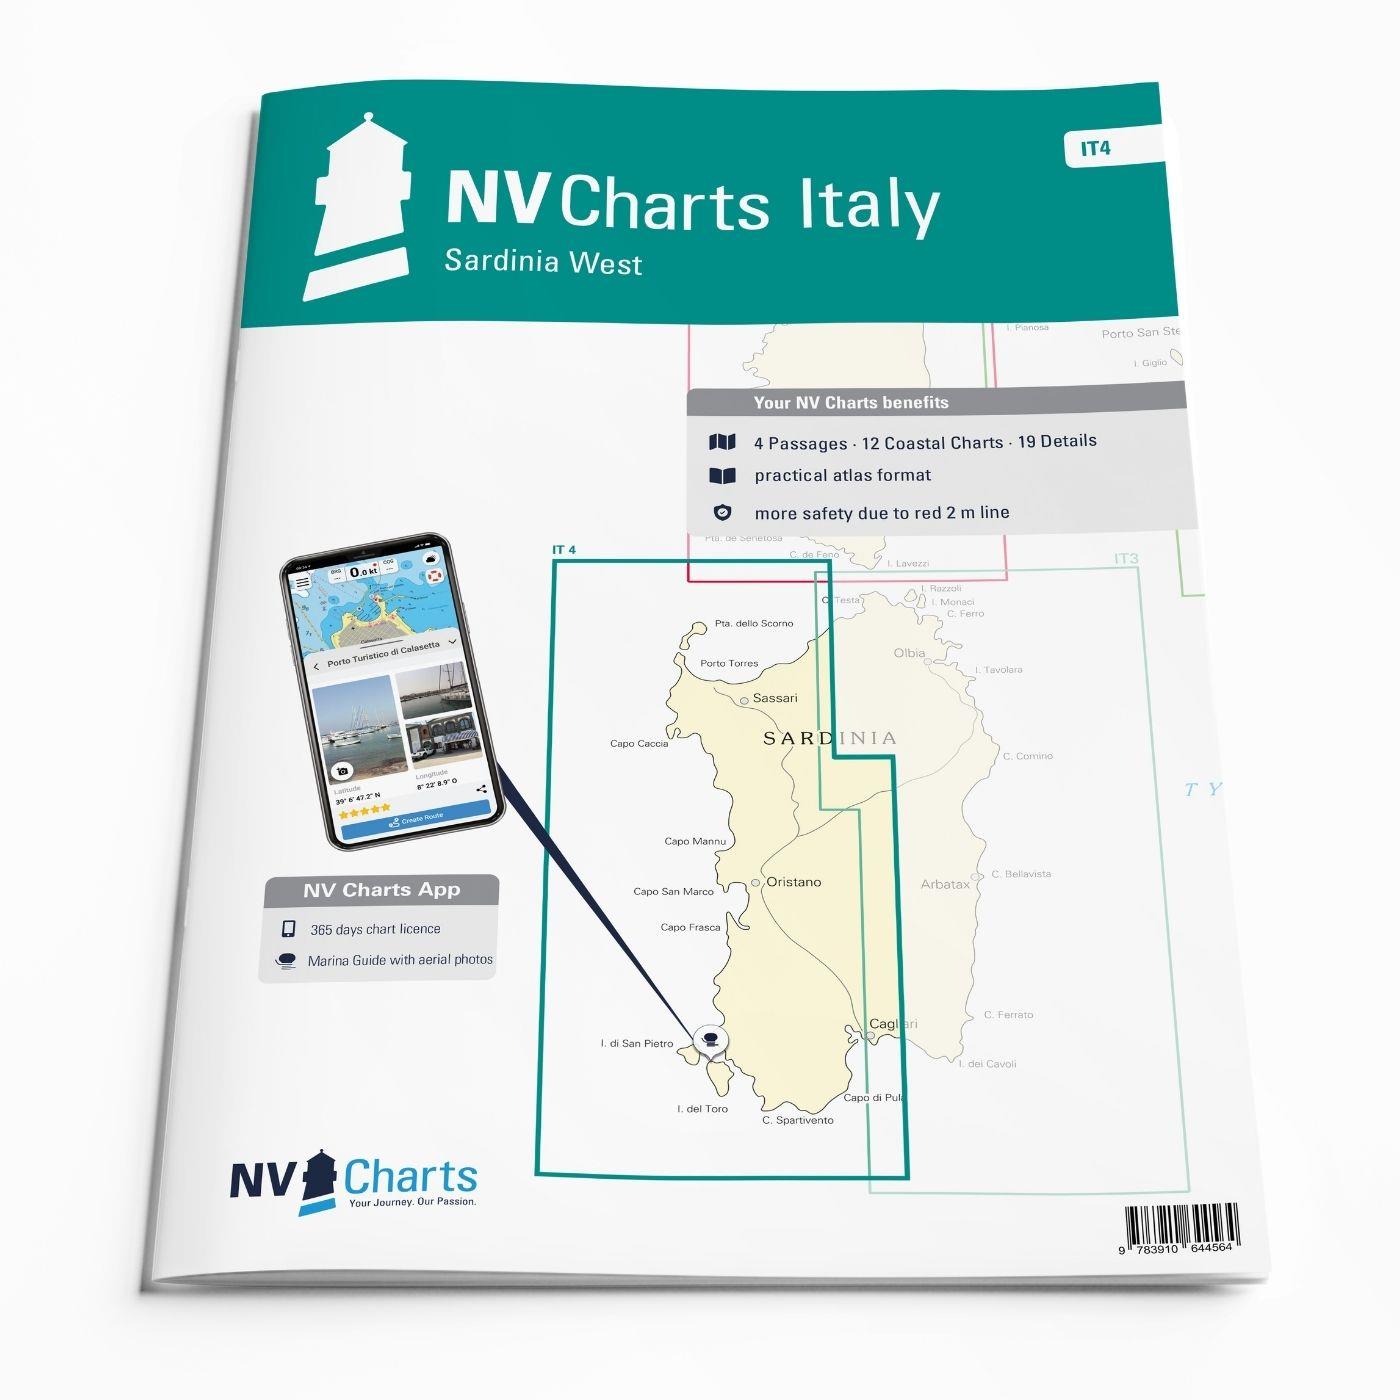 NV Charts Italy IT4 - Sardinia West